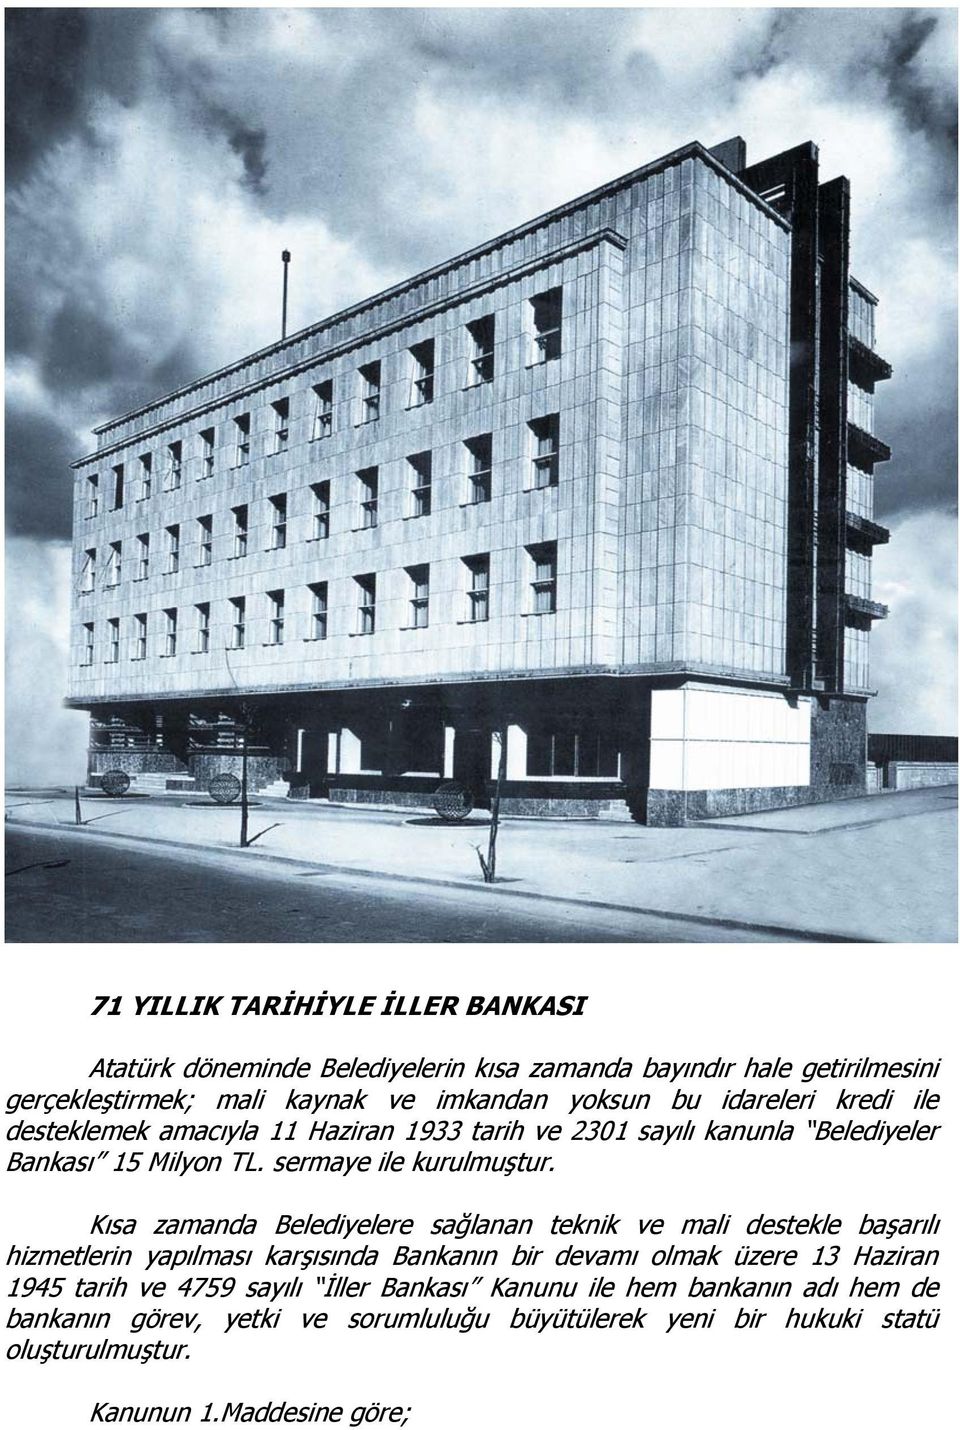 Kısa zamanda Belediyelere sağlanan teknik ve mali destekle başarılı hizmetlerin yapılması karşısında Bankanın bir devamı olmak üzere 13 Haziran 1945 tarih ve